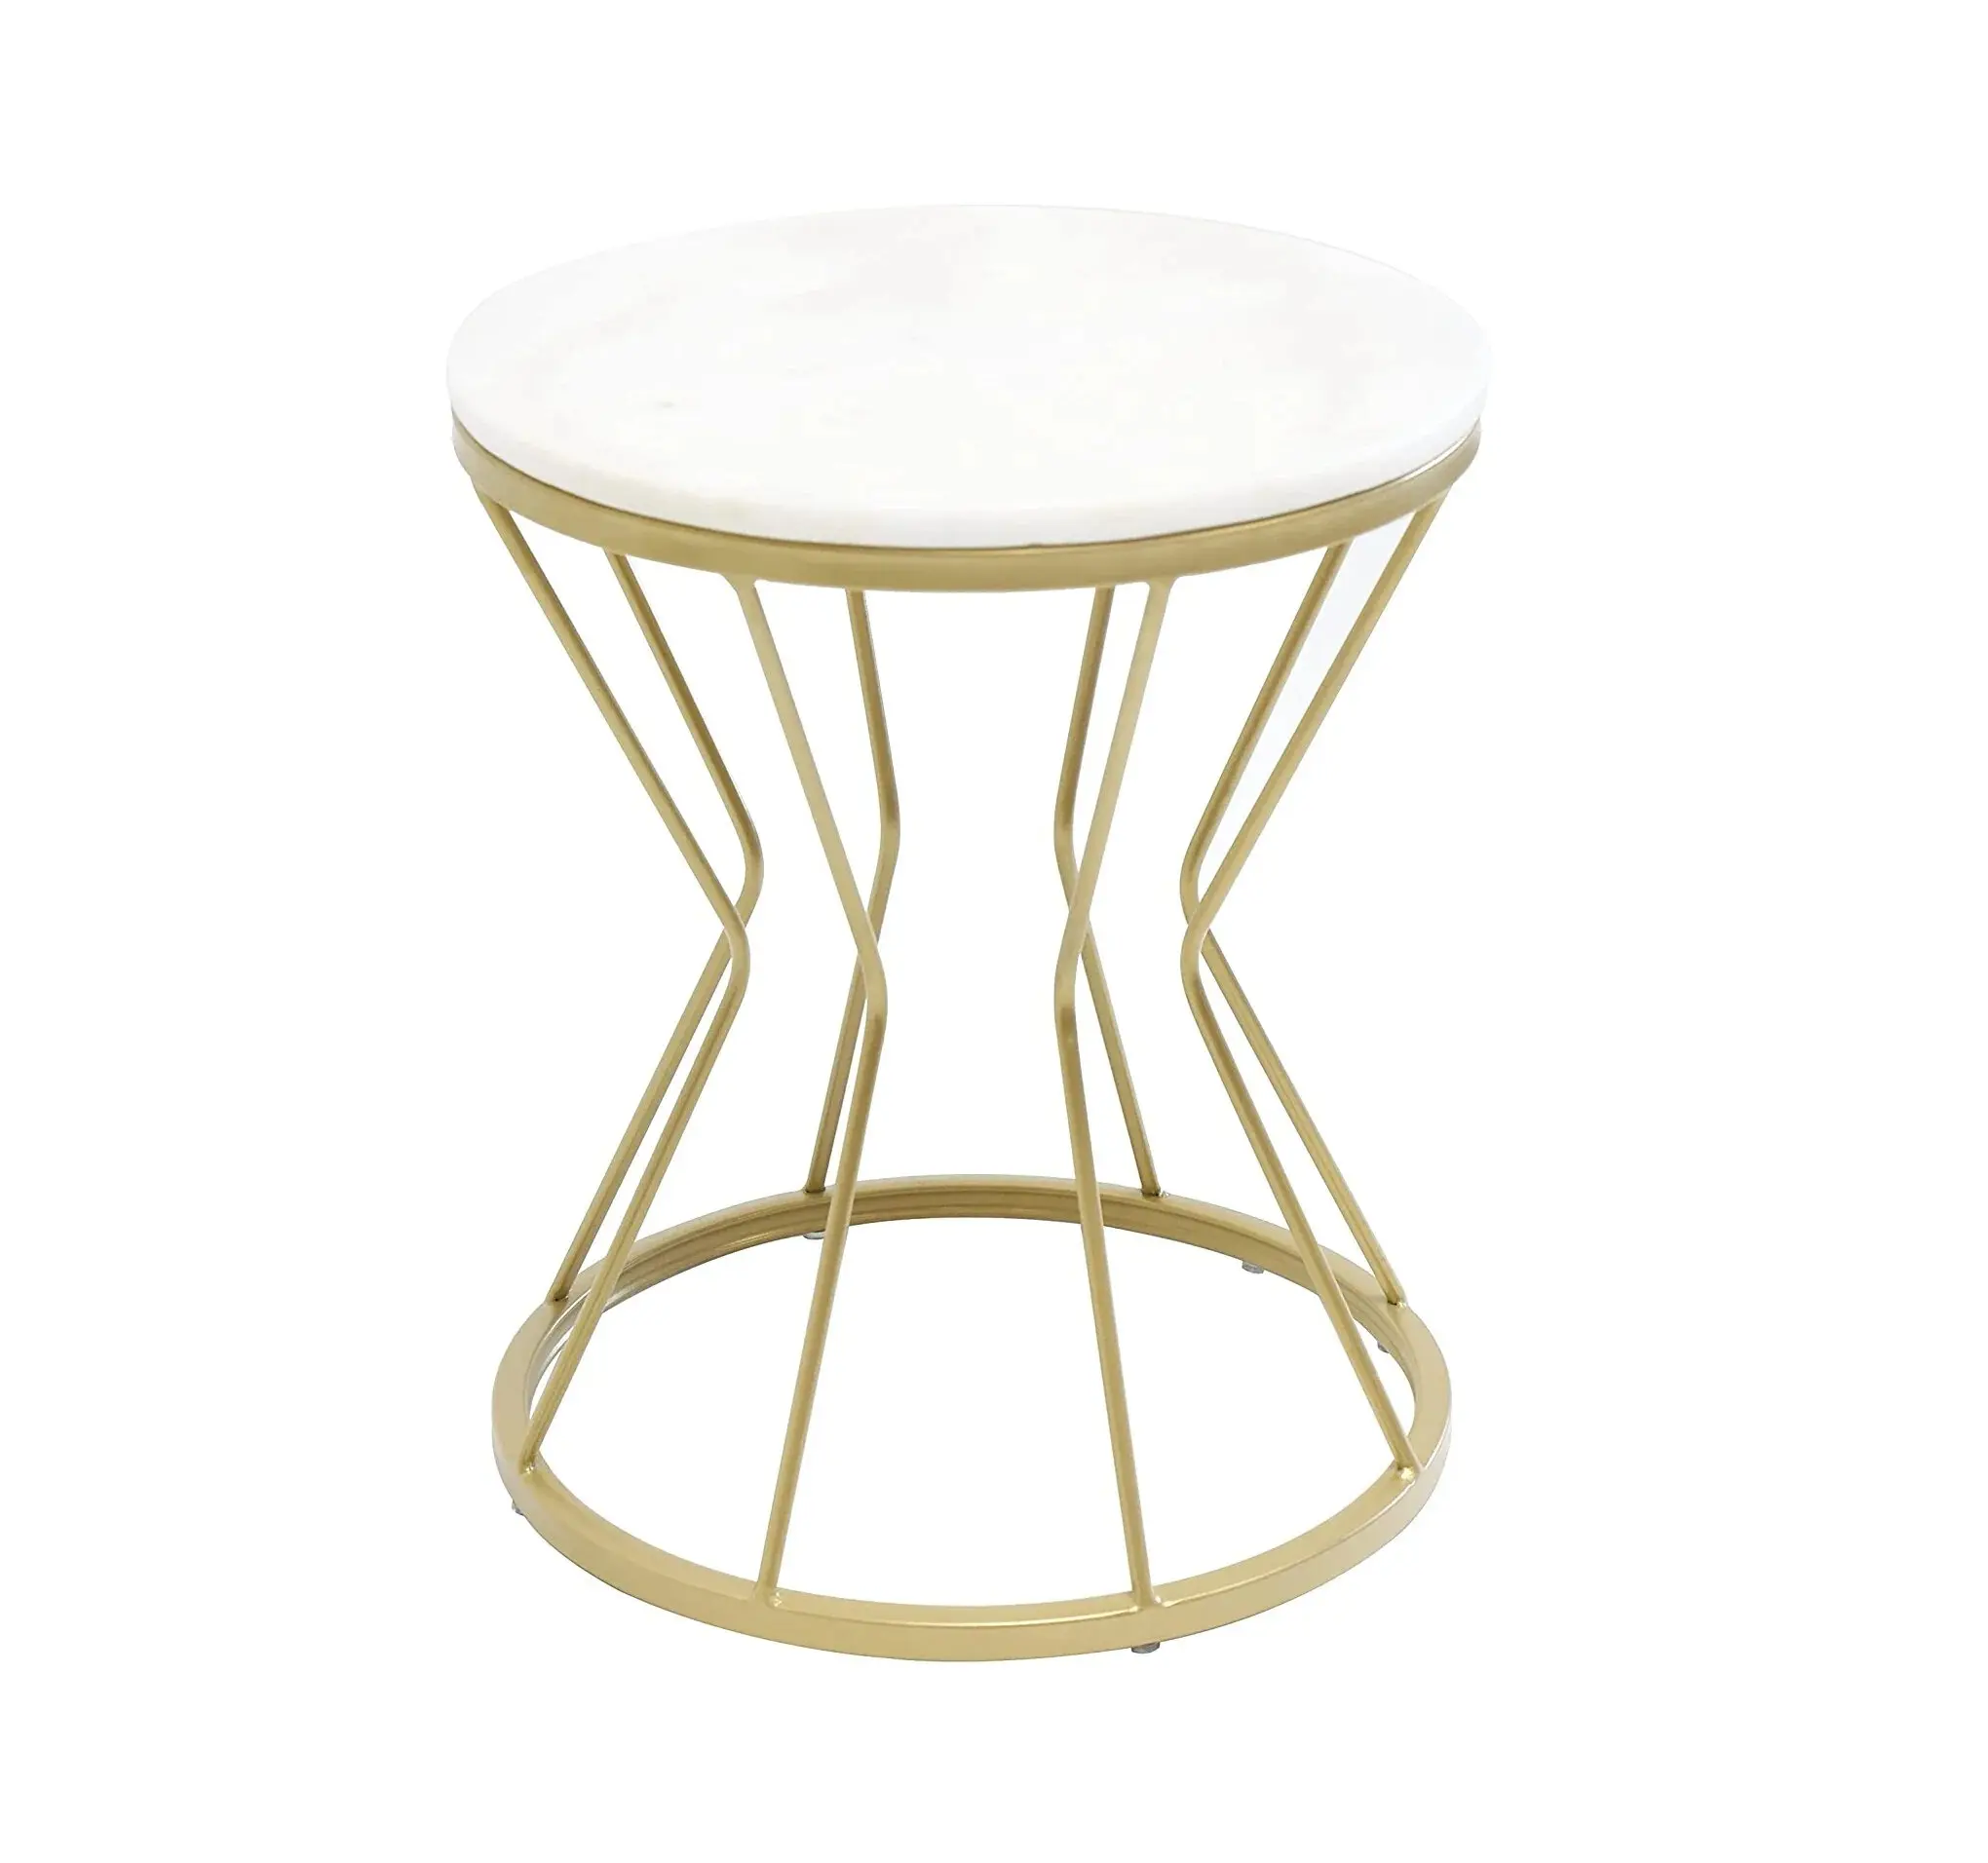 طاولة مدورة صغيرة حديثة ذهبية مع قاعدة معدنية من الفولاذ المقاوم للصدأ مع طاولة جانبية من الرخام لغرفة المعيشة أثاث منزلي